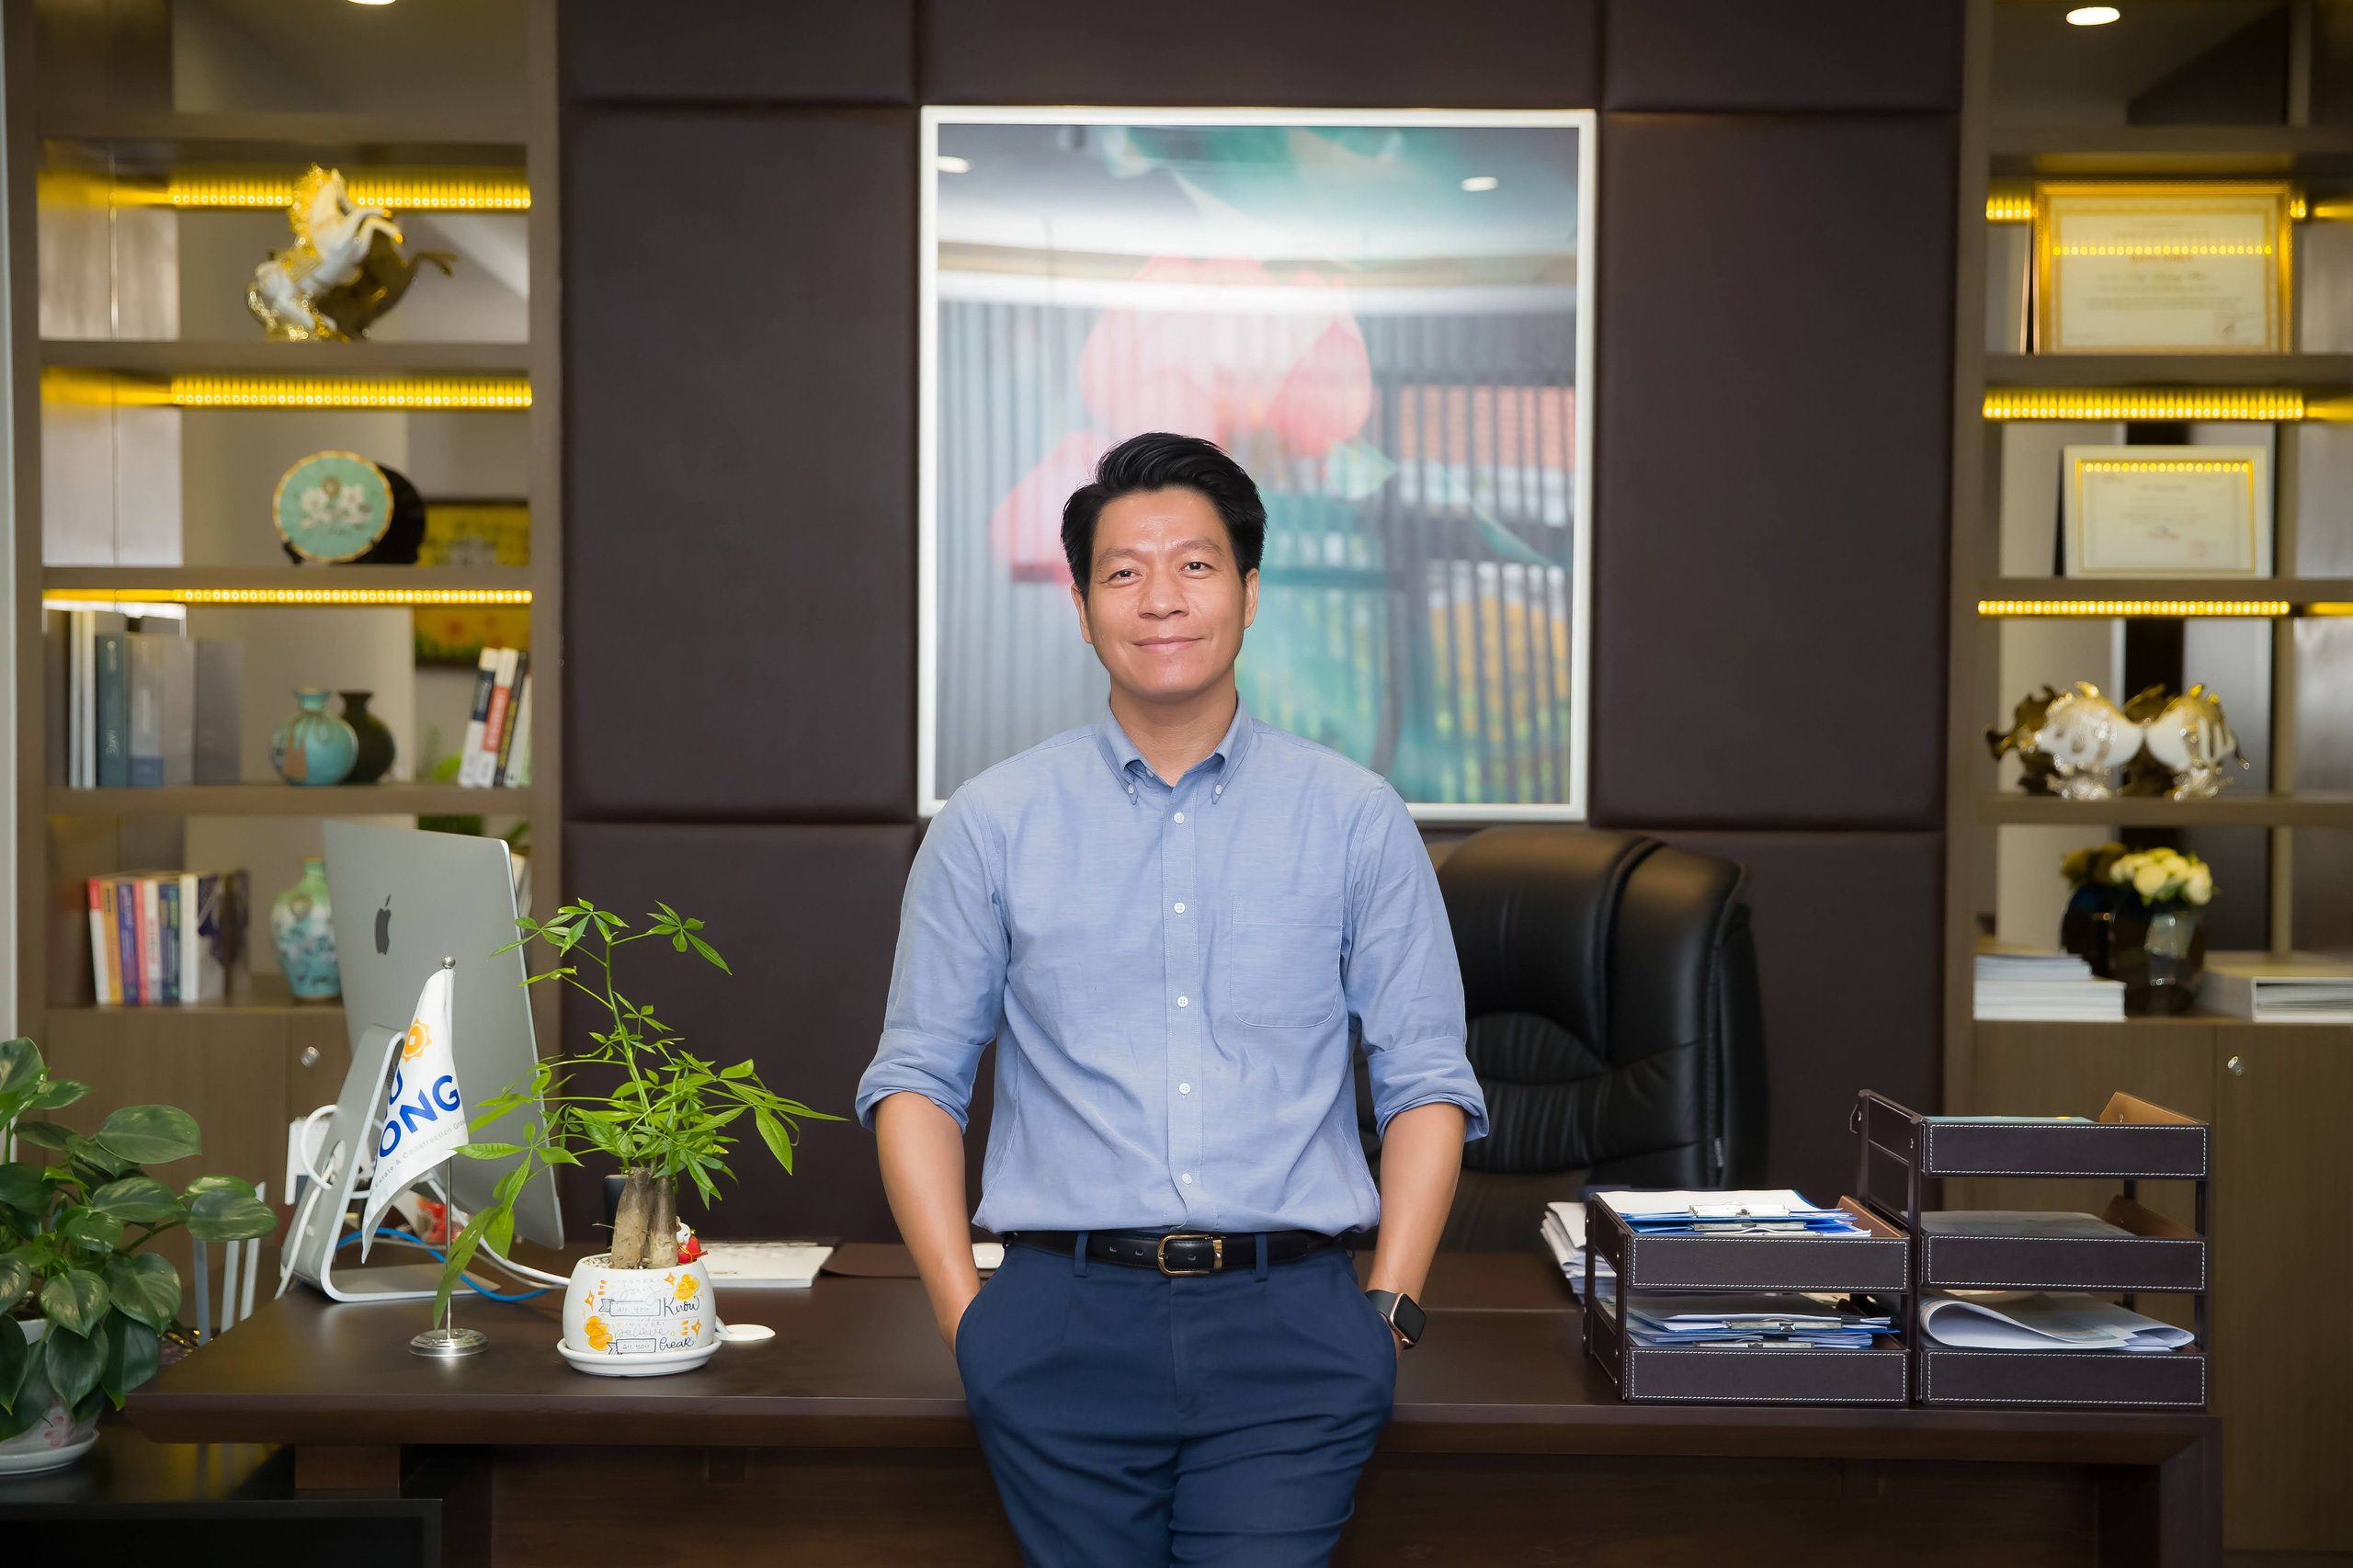 Chân dung CEO Phú Đông Group Ngô Quang Phúc - Từ nhân viên bán BĐS đến thuyền trưởng của những cao ốc chung cư cho giới trẻ - Ảnh 1.